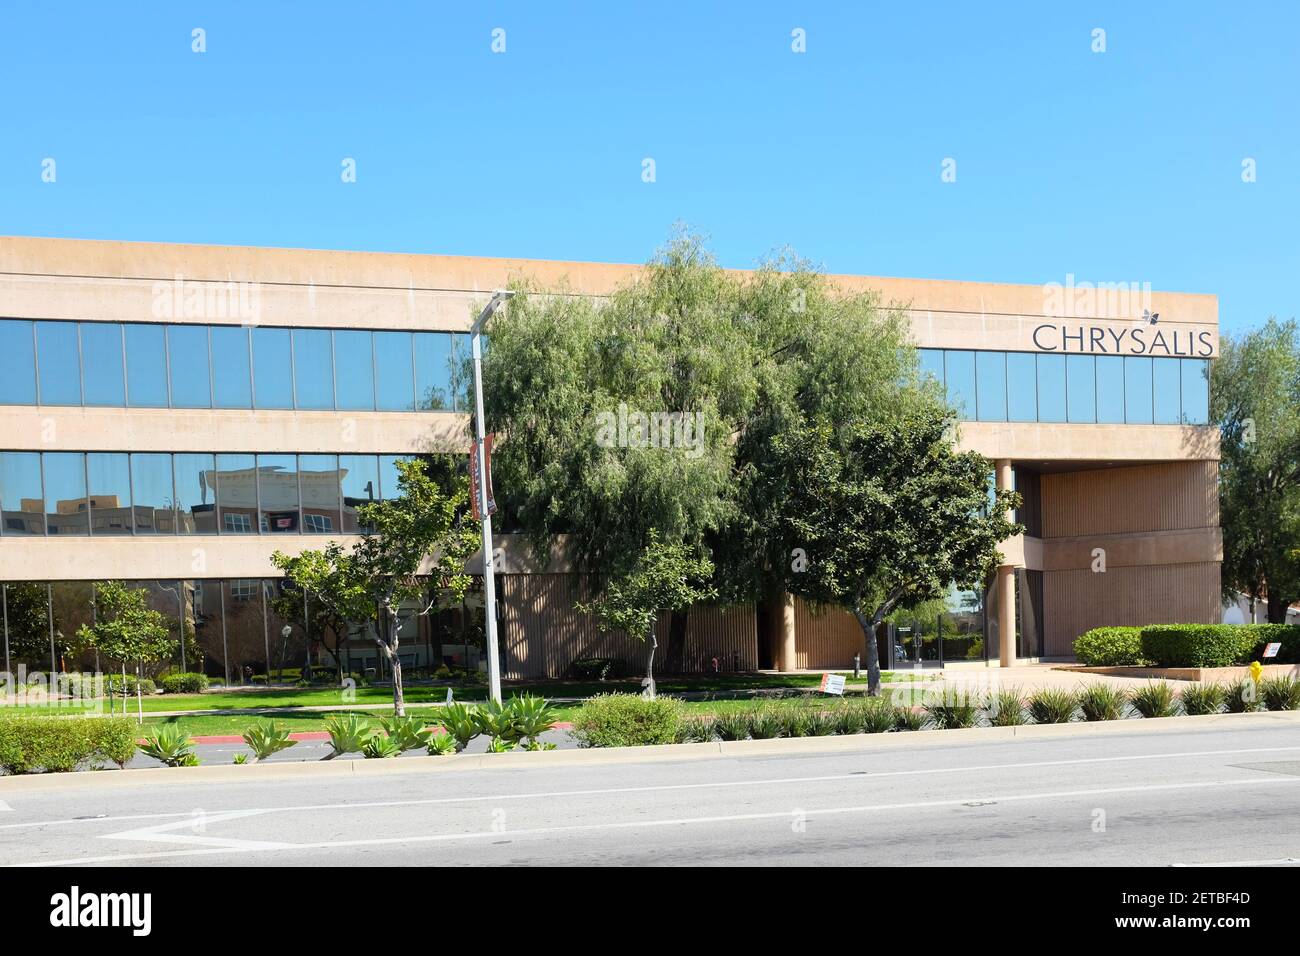 ANAHEIM, KALIFORNIEN - 1. MÄRZ 2021: Chrysalis Building. Chrysalis ist eine gemeinnützige Organisation, die sich der Schaffung eines Weges zur Selbstversorgung für ho Stockfoto